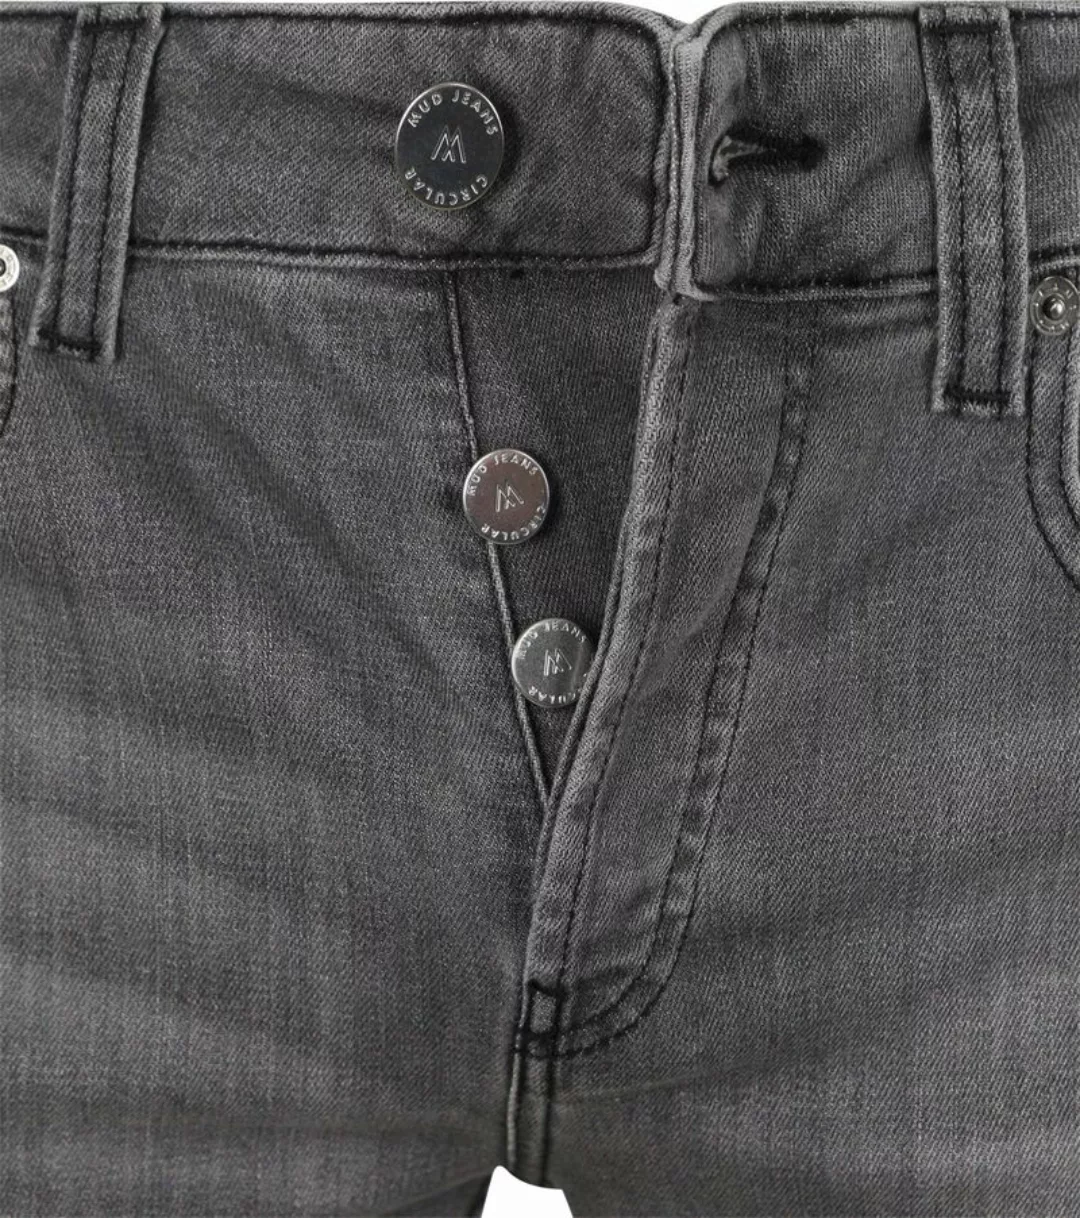 MUD Jeans Denim Slim-Fit Grau - Größe W 34 - L 34 günstig online kaufen